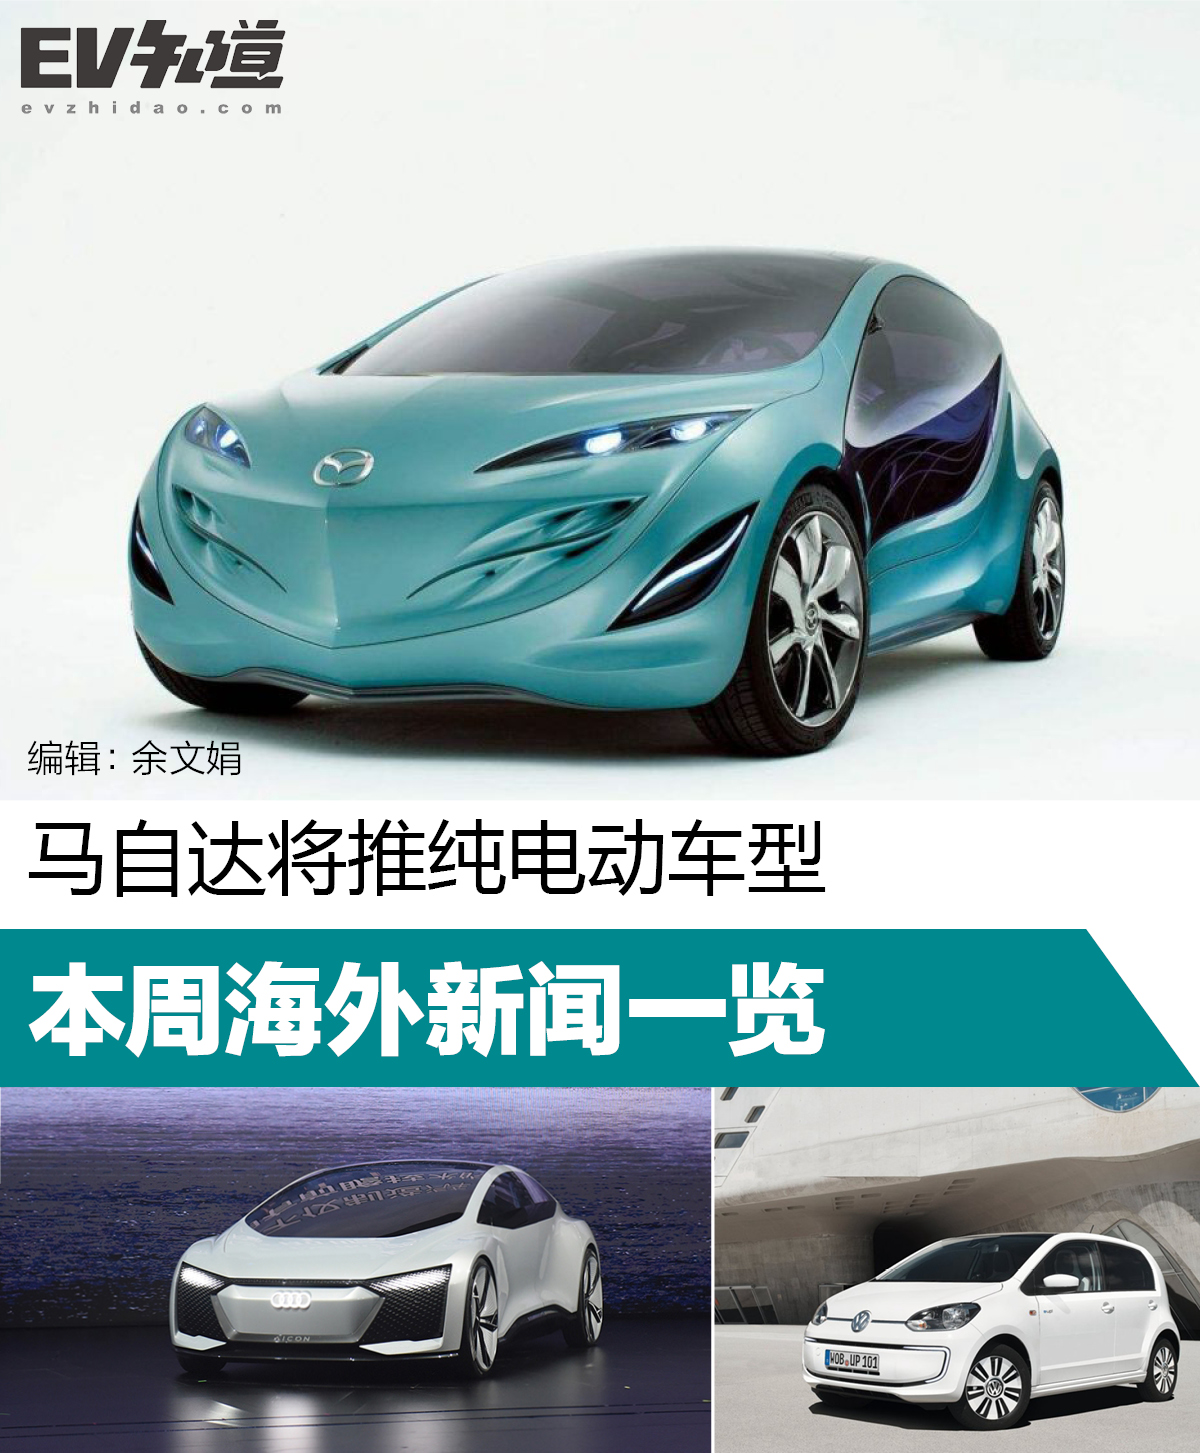 马自达将推纯电动车型 本周海外新闻一览